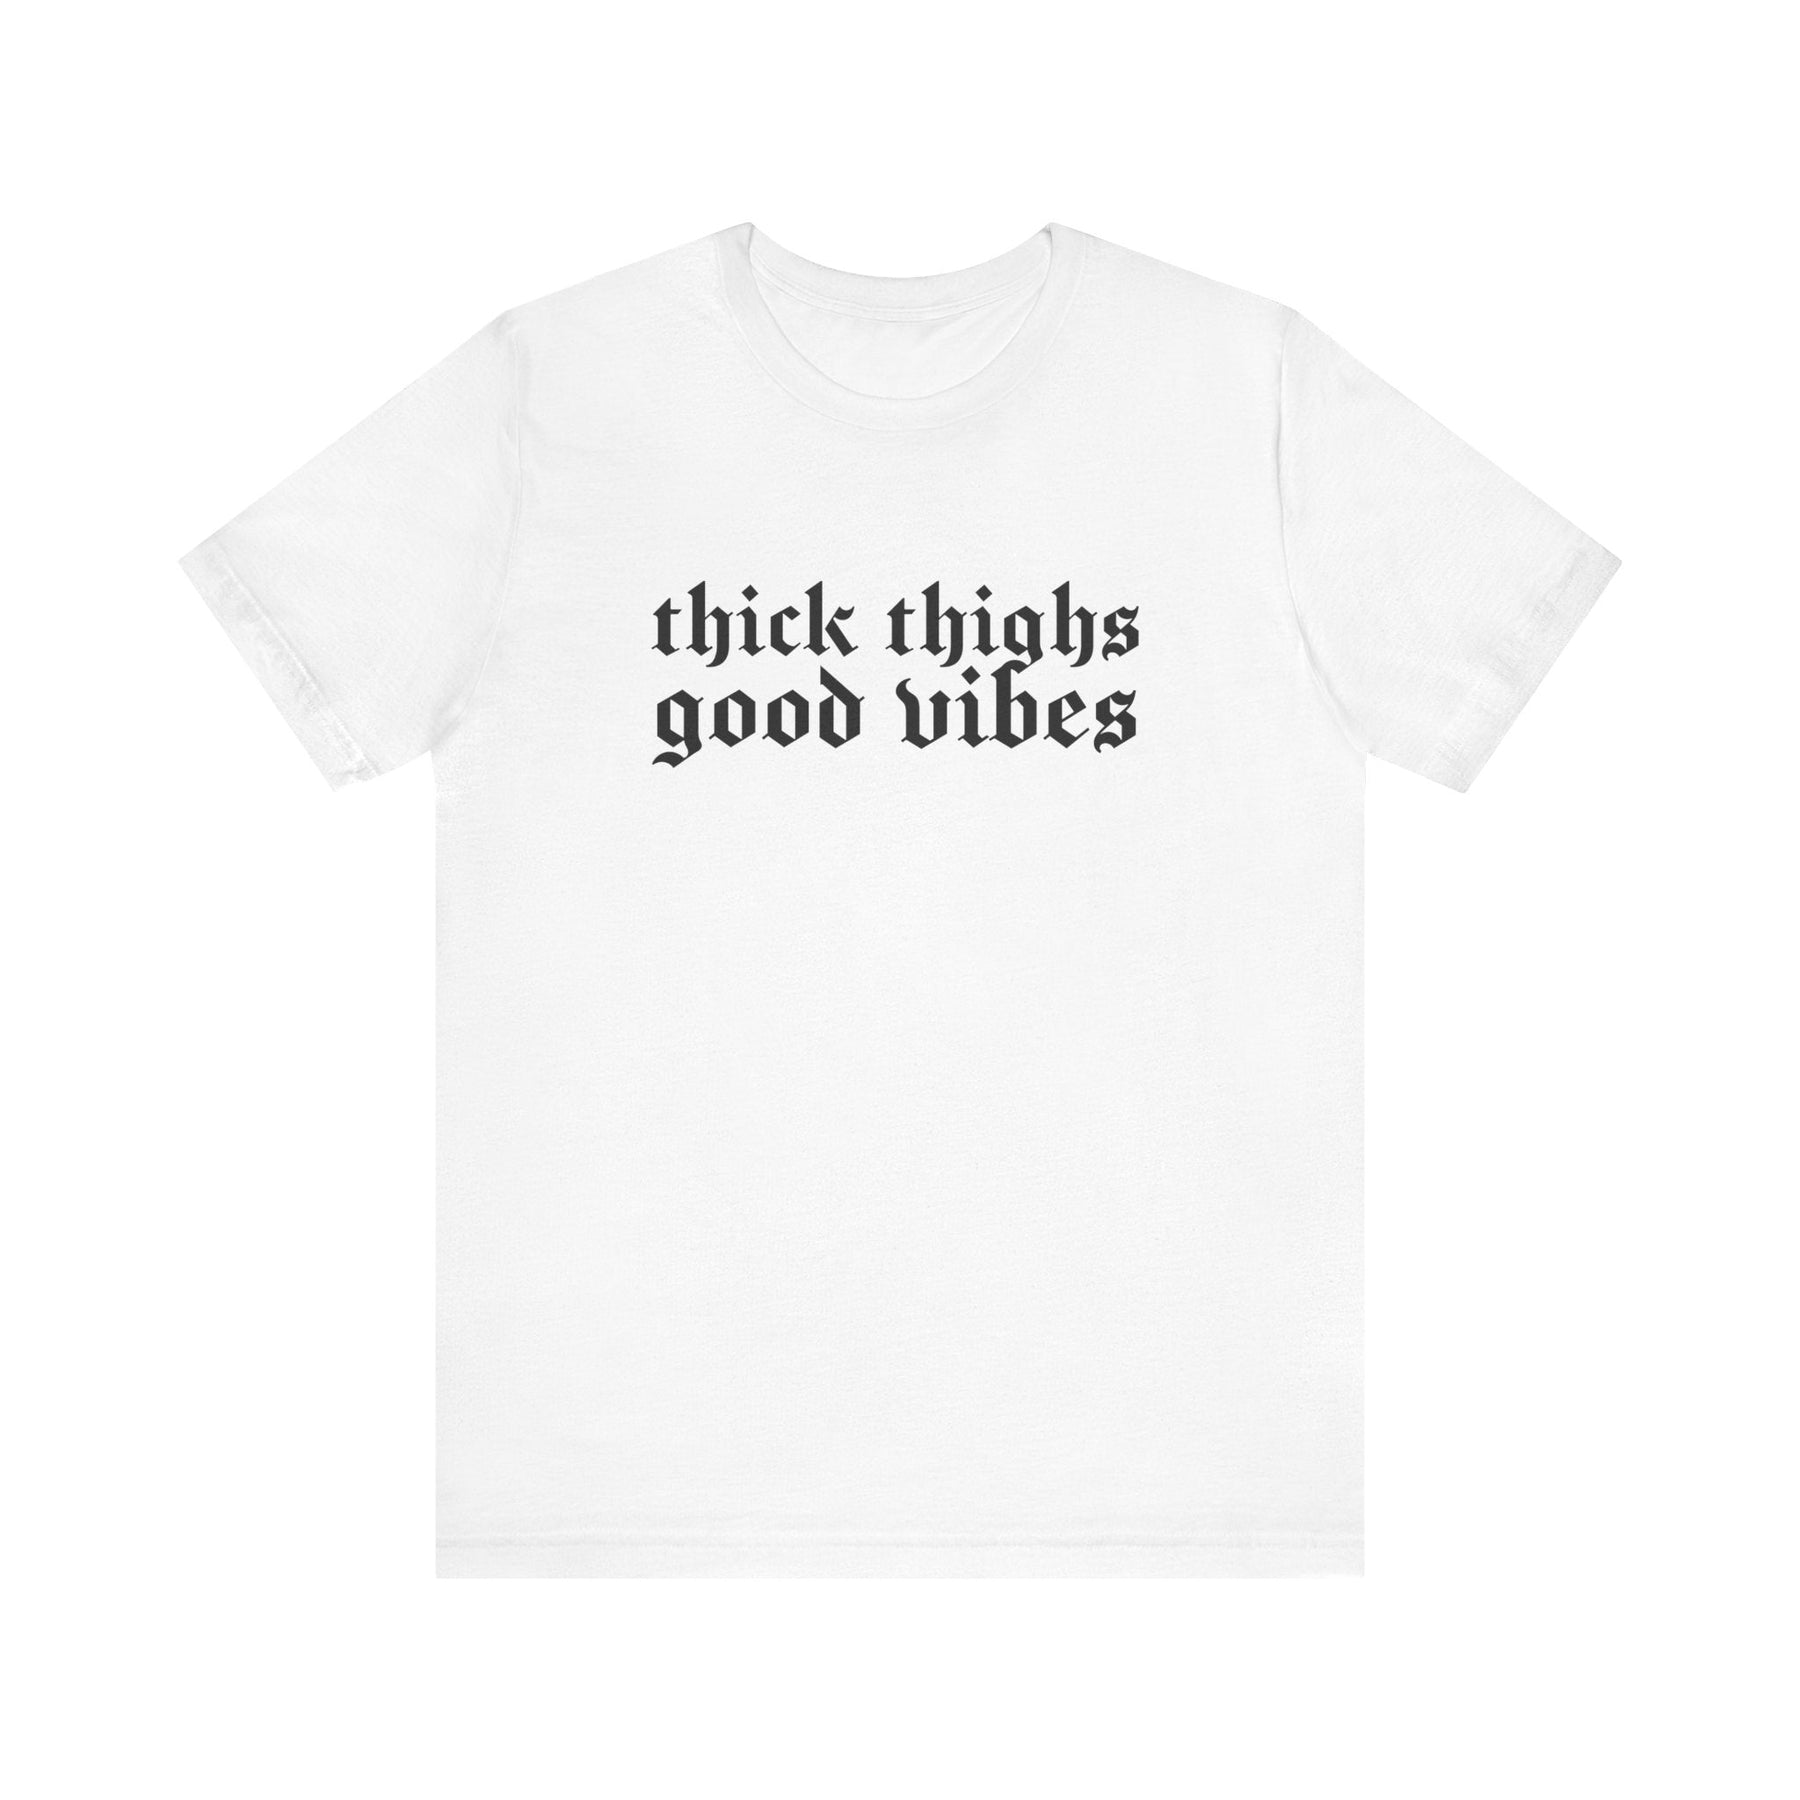 Thick Thighs, Good Vibes T-Shirt - Goth Cloth Co.T-Shirt13089943811655160825